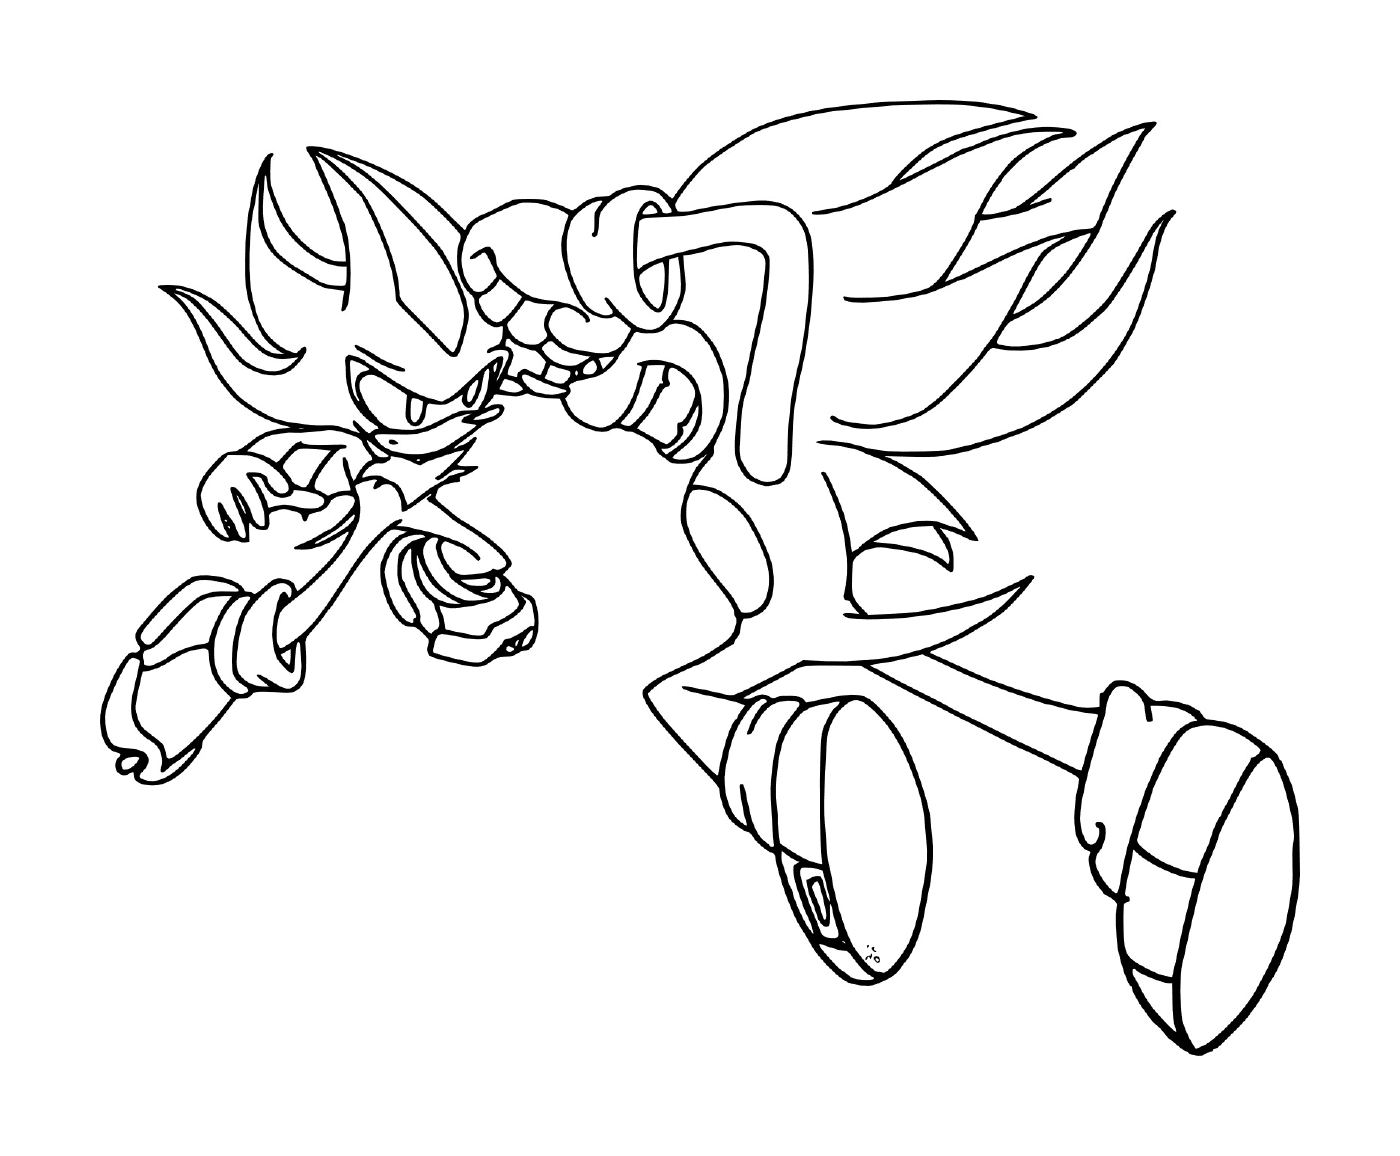  Sombra Sonic amigos poderosos 